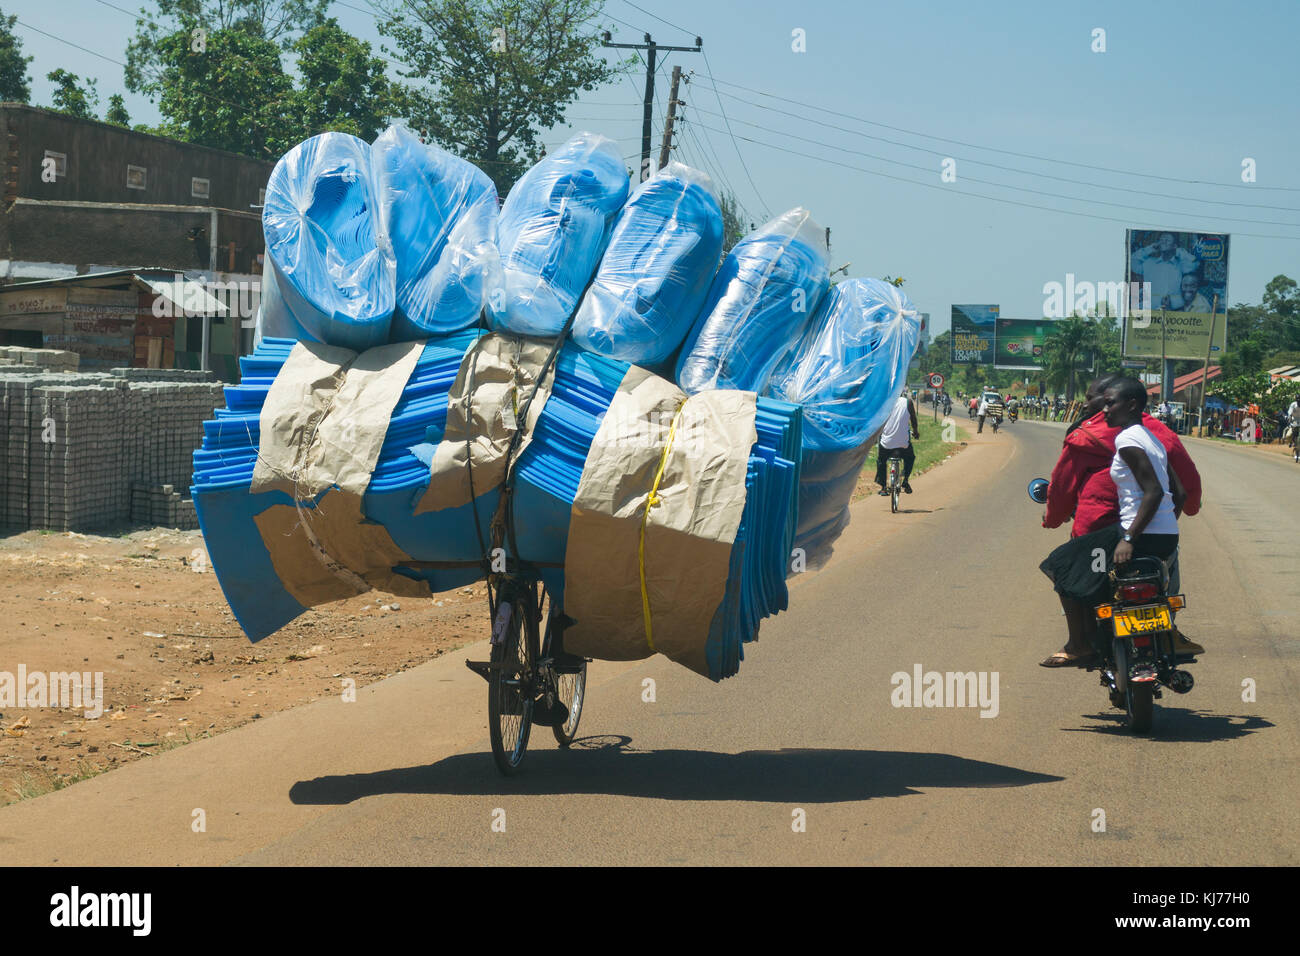 Un bicycist fortement chargé avec blue foam rides le long d'une route à travers une ville occupée, Busia, Ouganda, Afrique de l'Est Banque D'Images